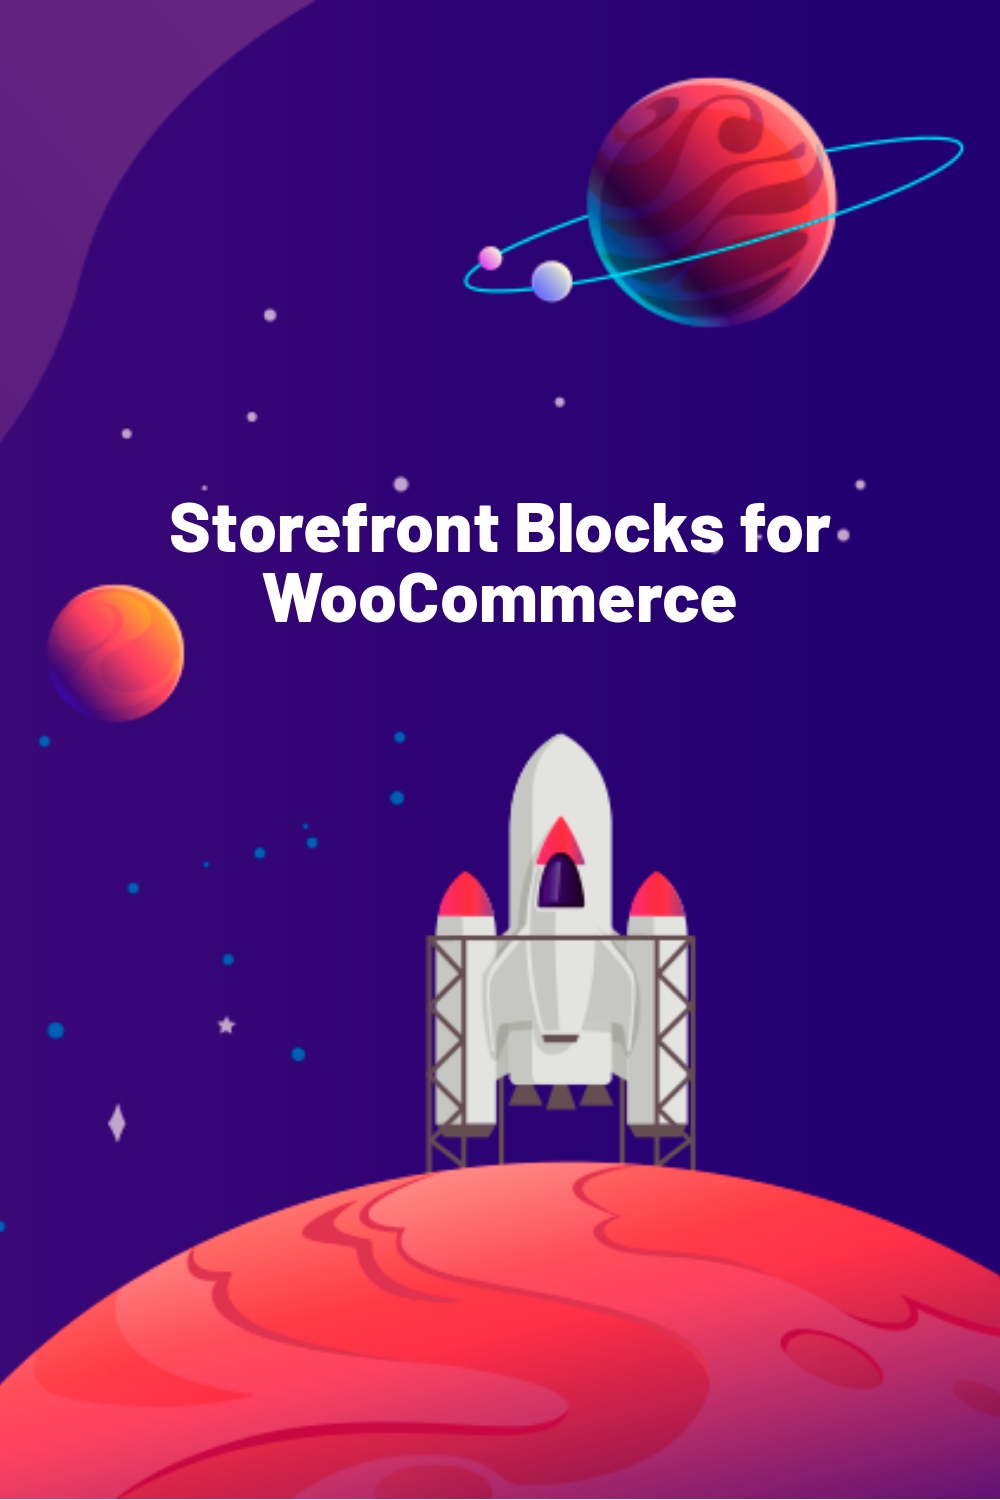 Storefront Blocks for WooCommerce